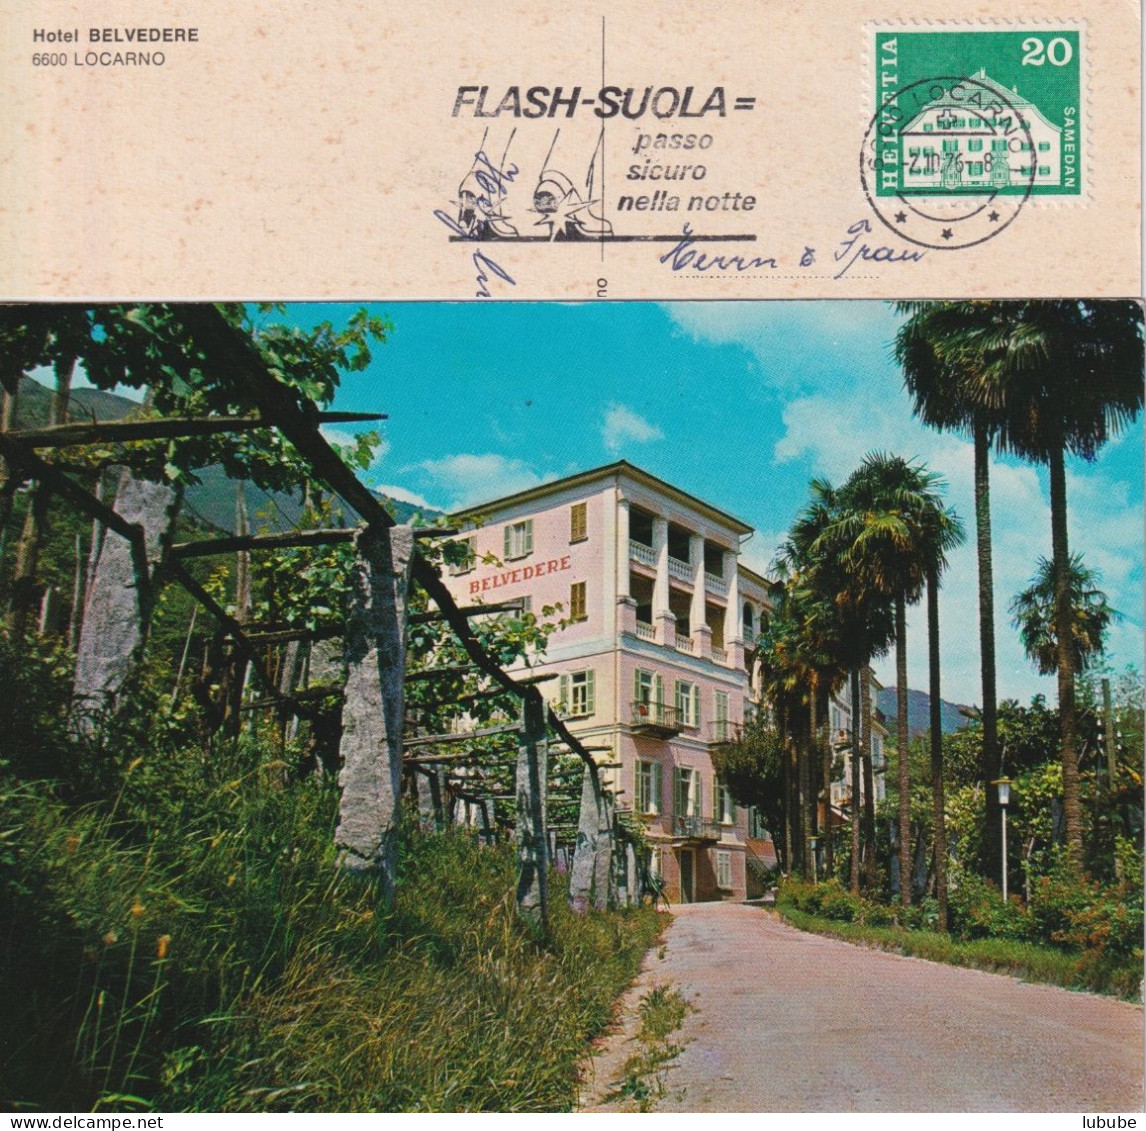 Locarno - Hotel Belvedere  (Flagge: "Flash Suola")        1976 - Locarno